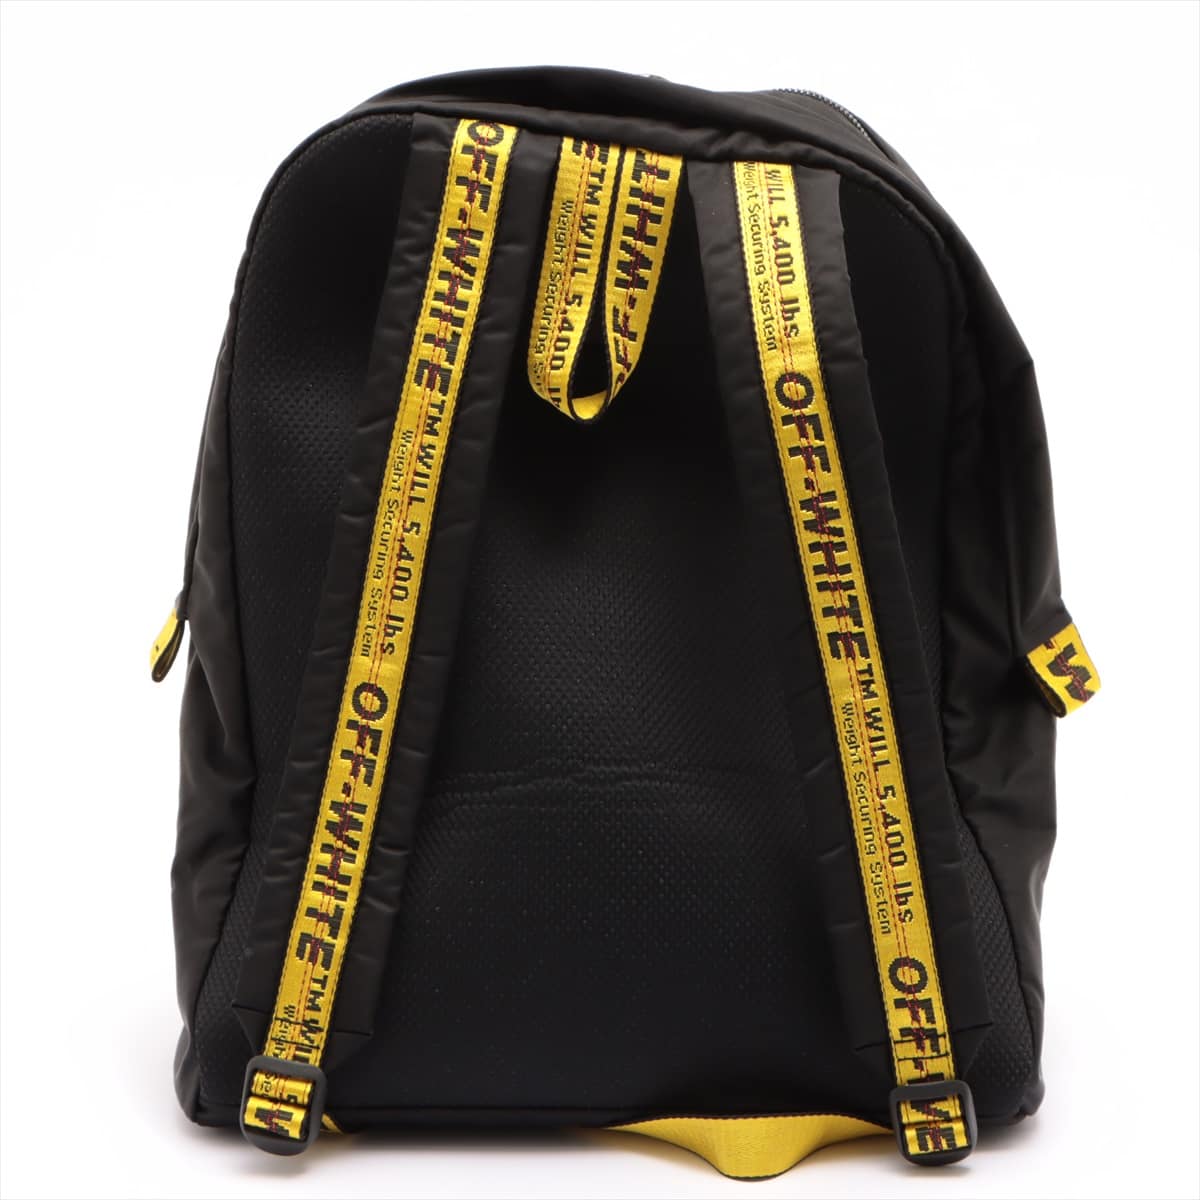 Off-White belt design Arrow print Nylon Backpack Black